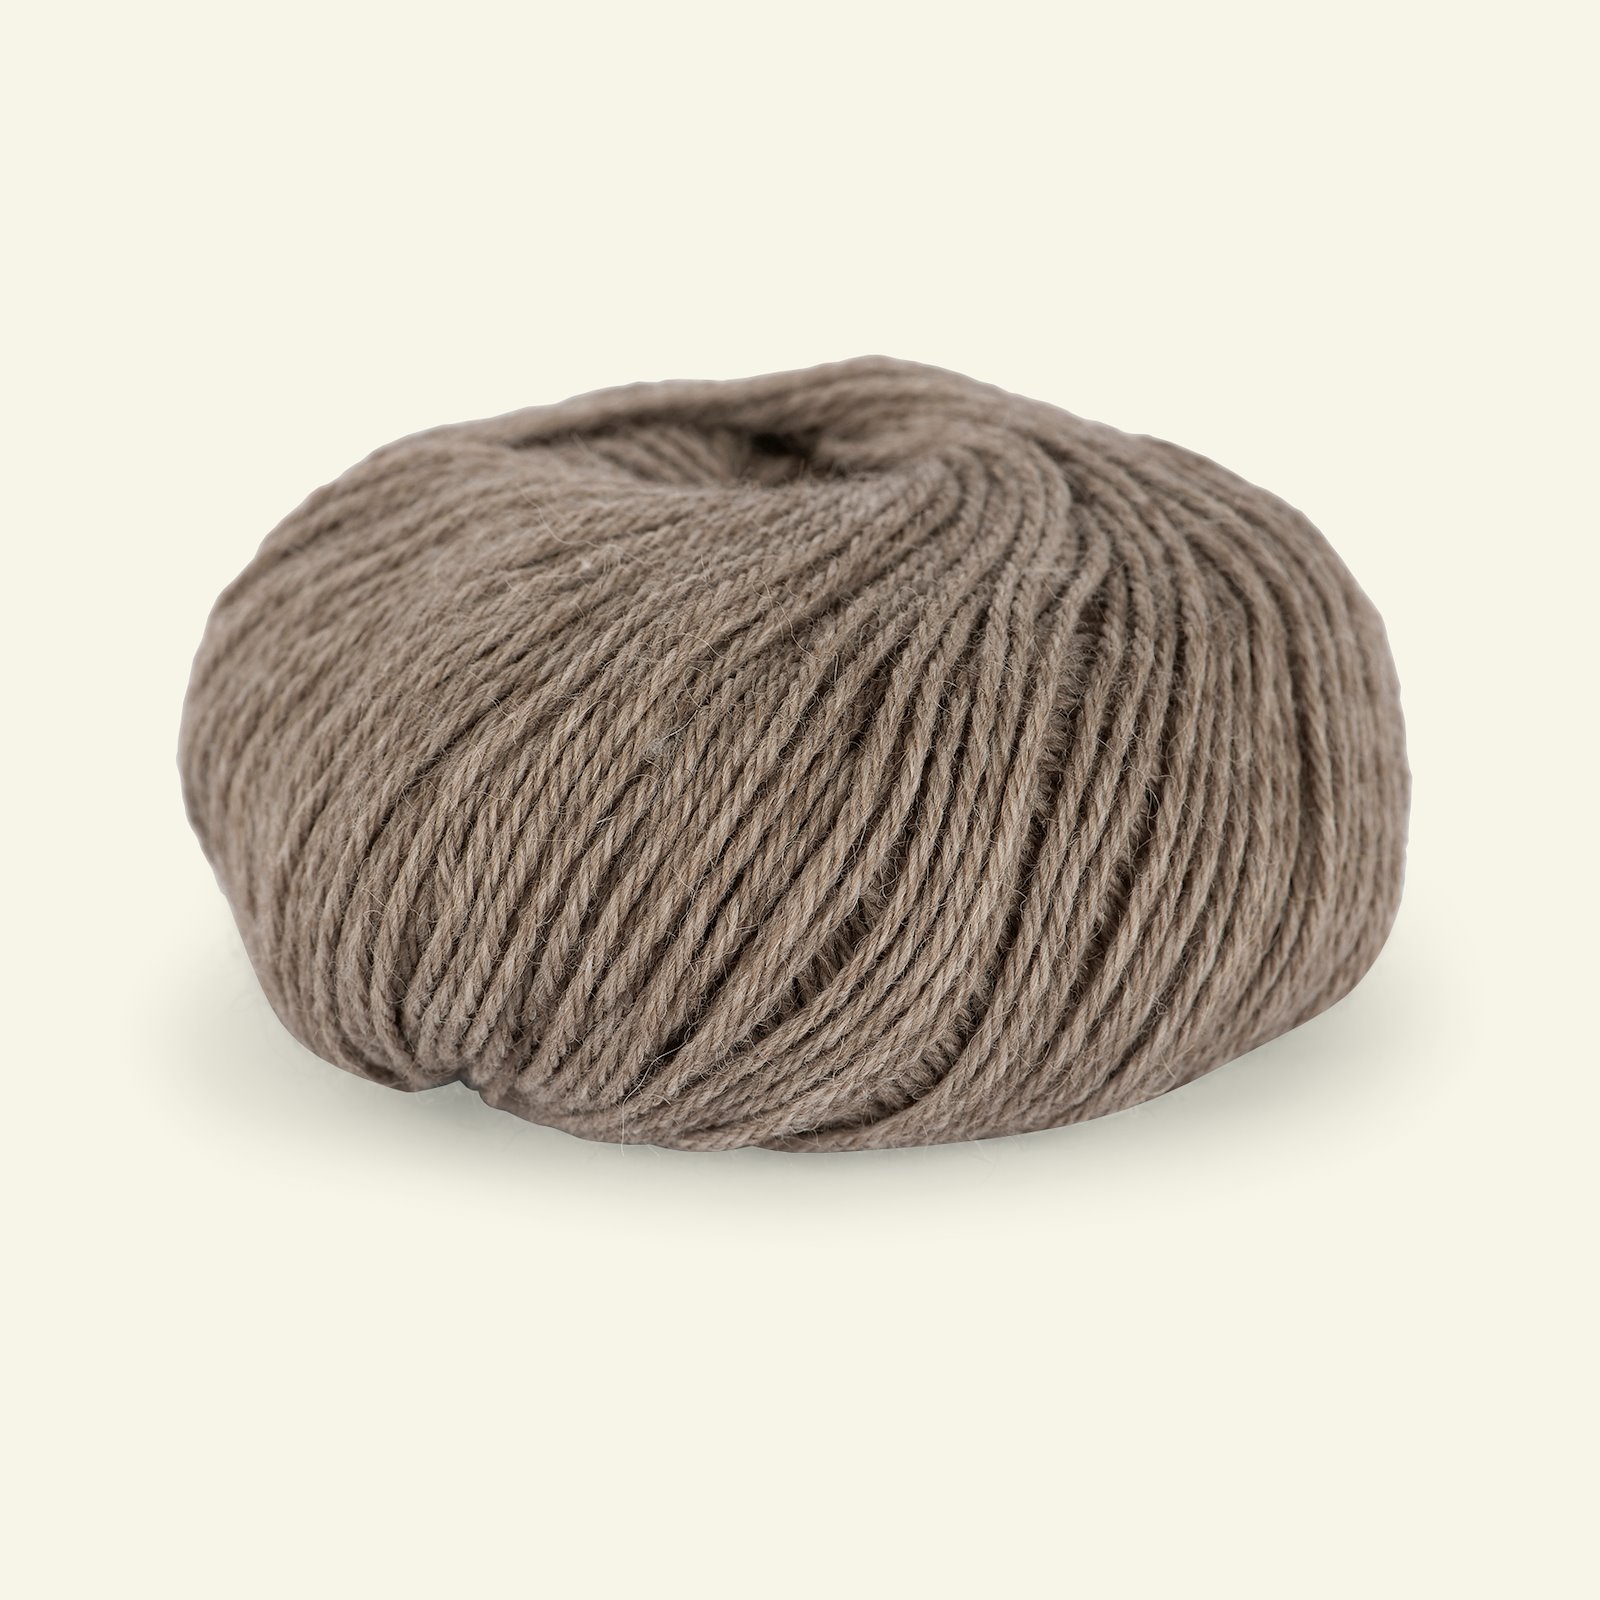 Du Store Alpakka, alpaca merino blandingsgarn, "Sterk", lys brun melange (823) 90000664_pack_b